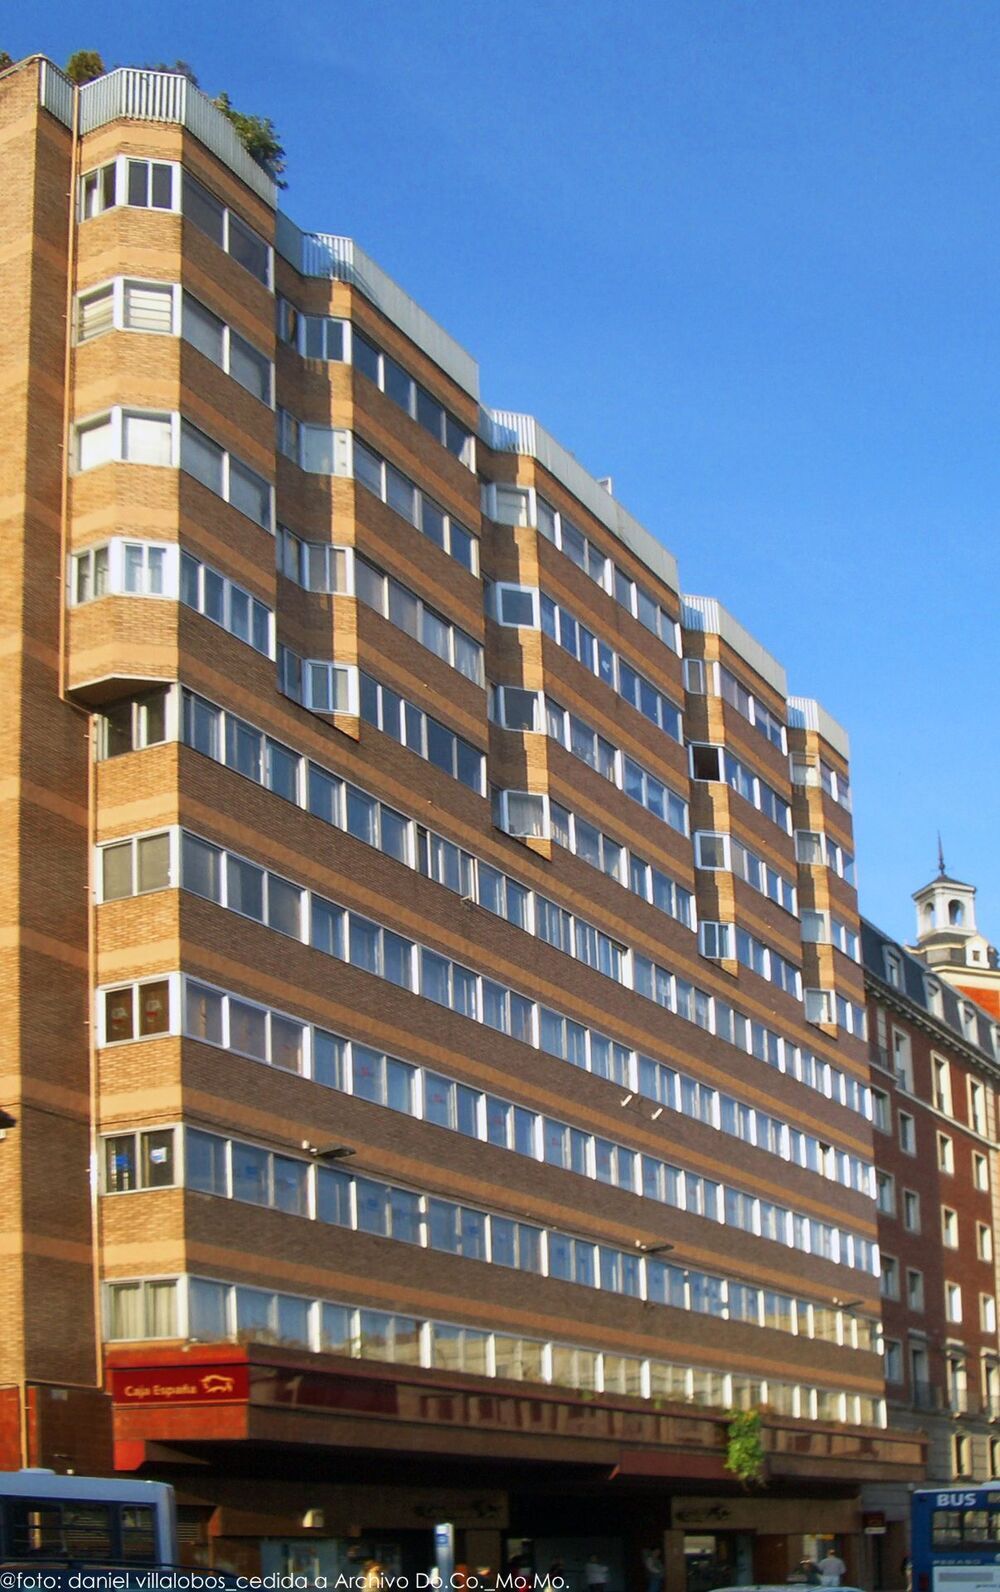 Edificio de viviendas y oficinas de Caja España, que opta al Docomomo.